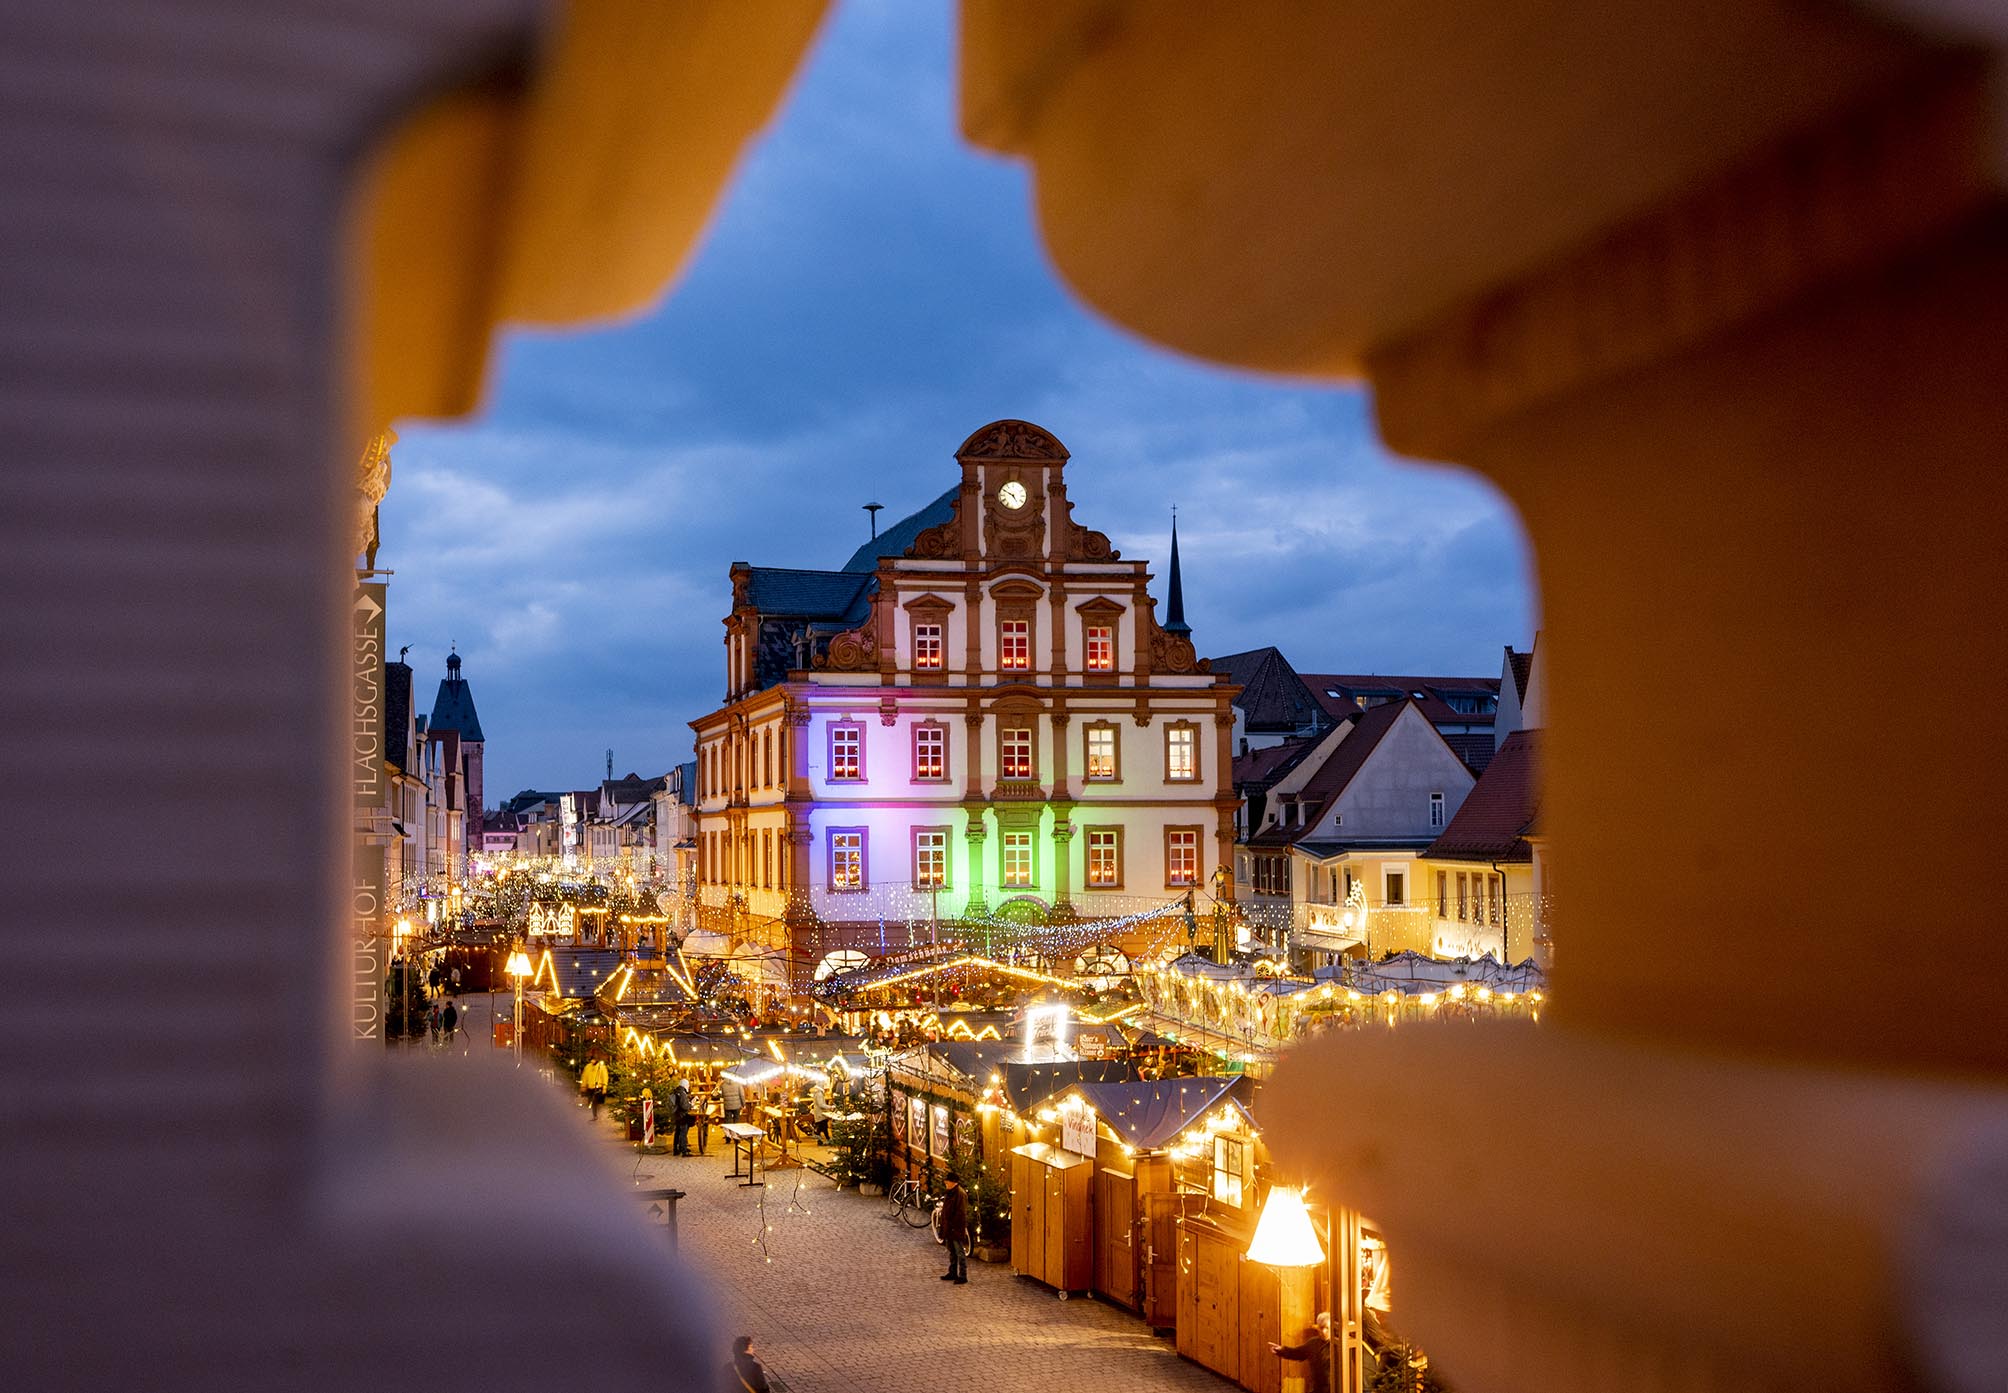 Blick auf die Alte Münze und den Weihnachtsmarkt durch eines der Ornamente in der Sandsteinballustrade des Rathaus-Balkons